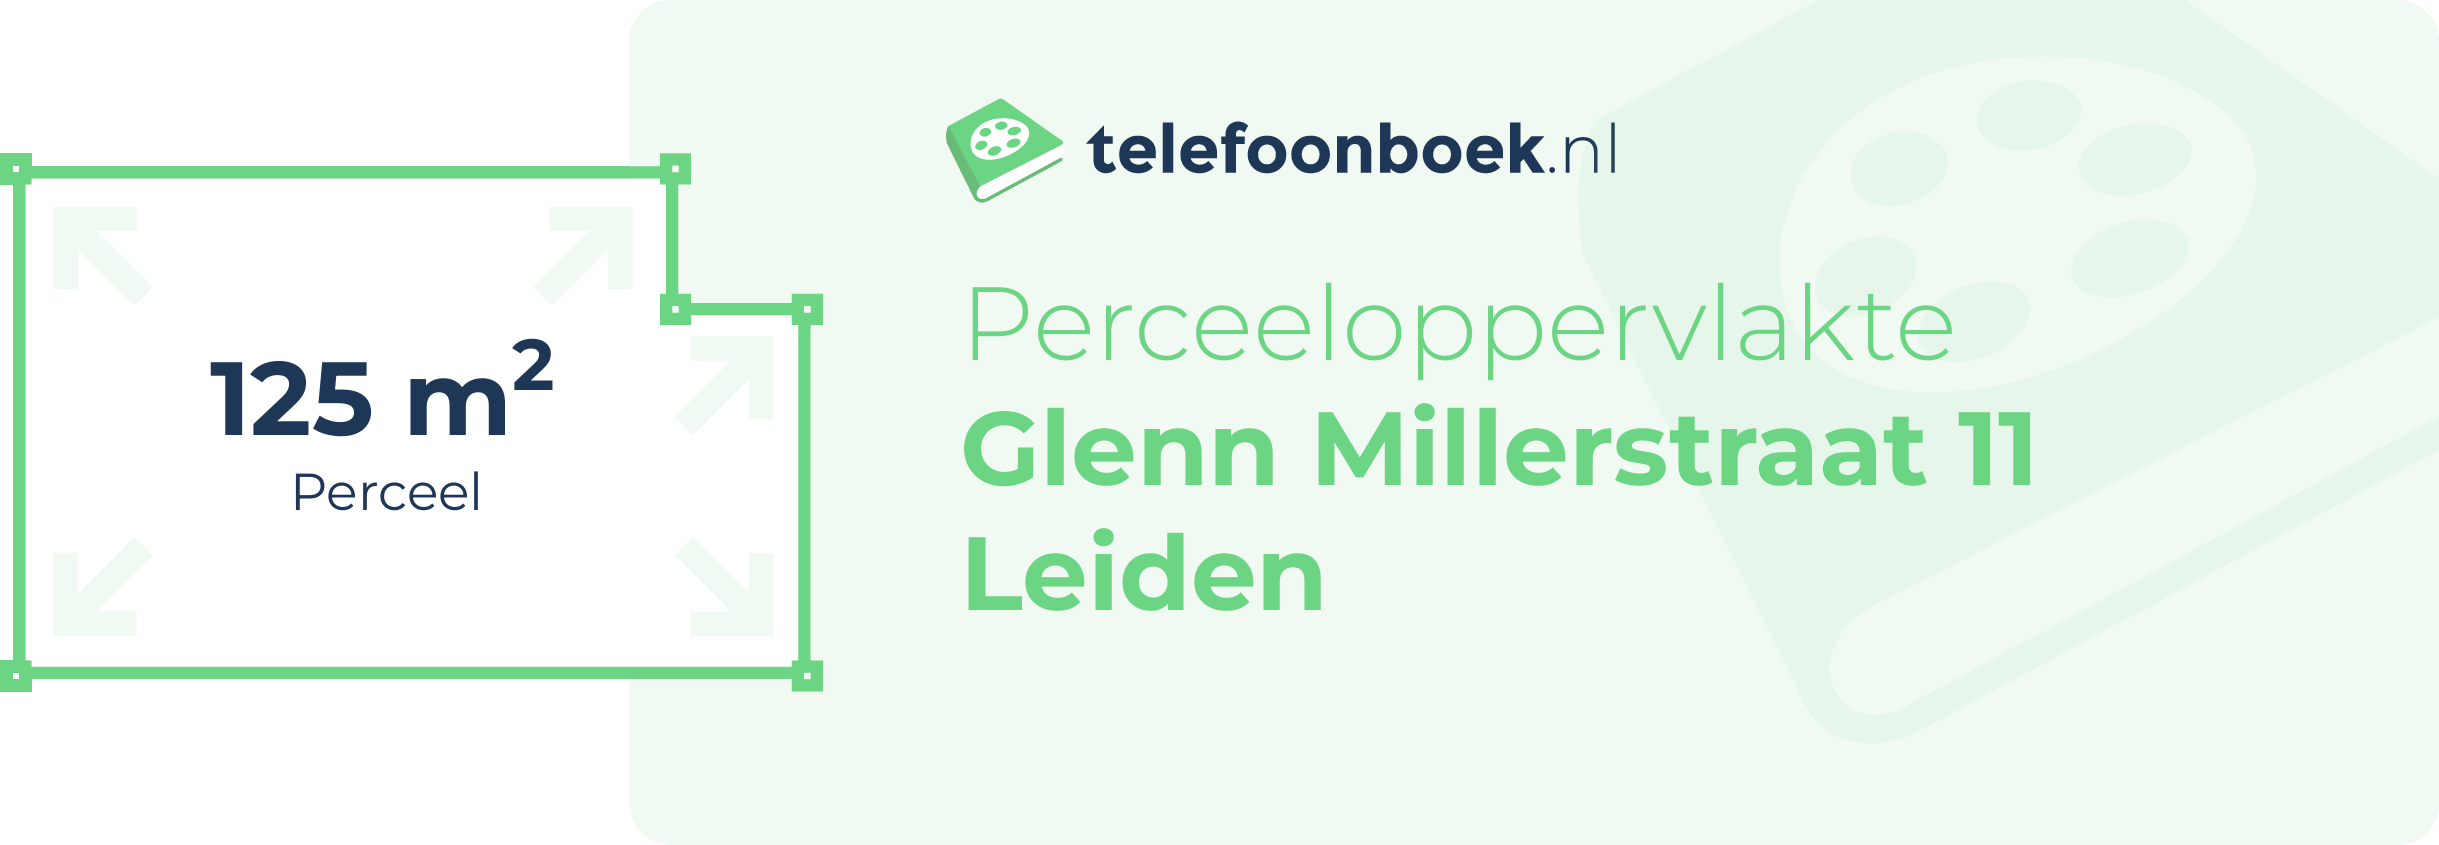 Perceeloppervlakte Glenn Millerstraat 11 Leiden